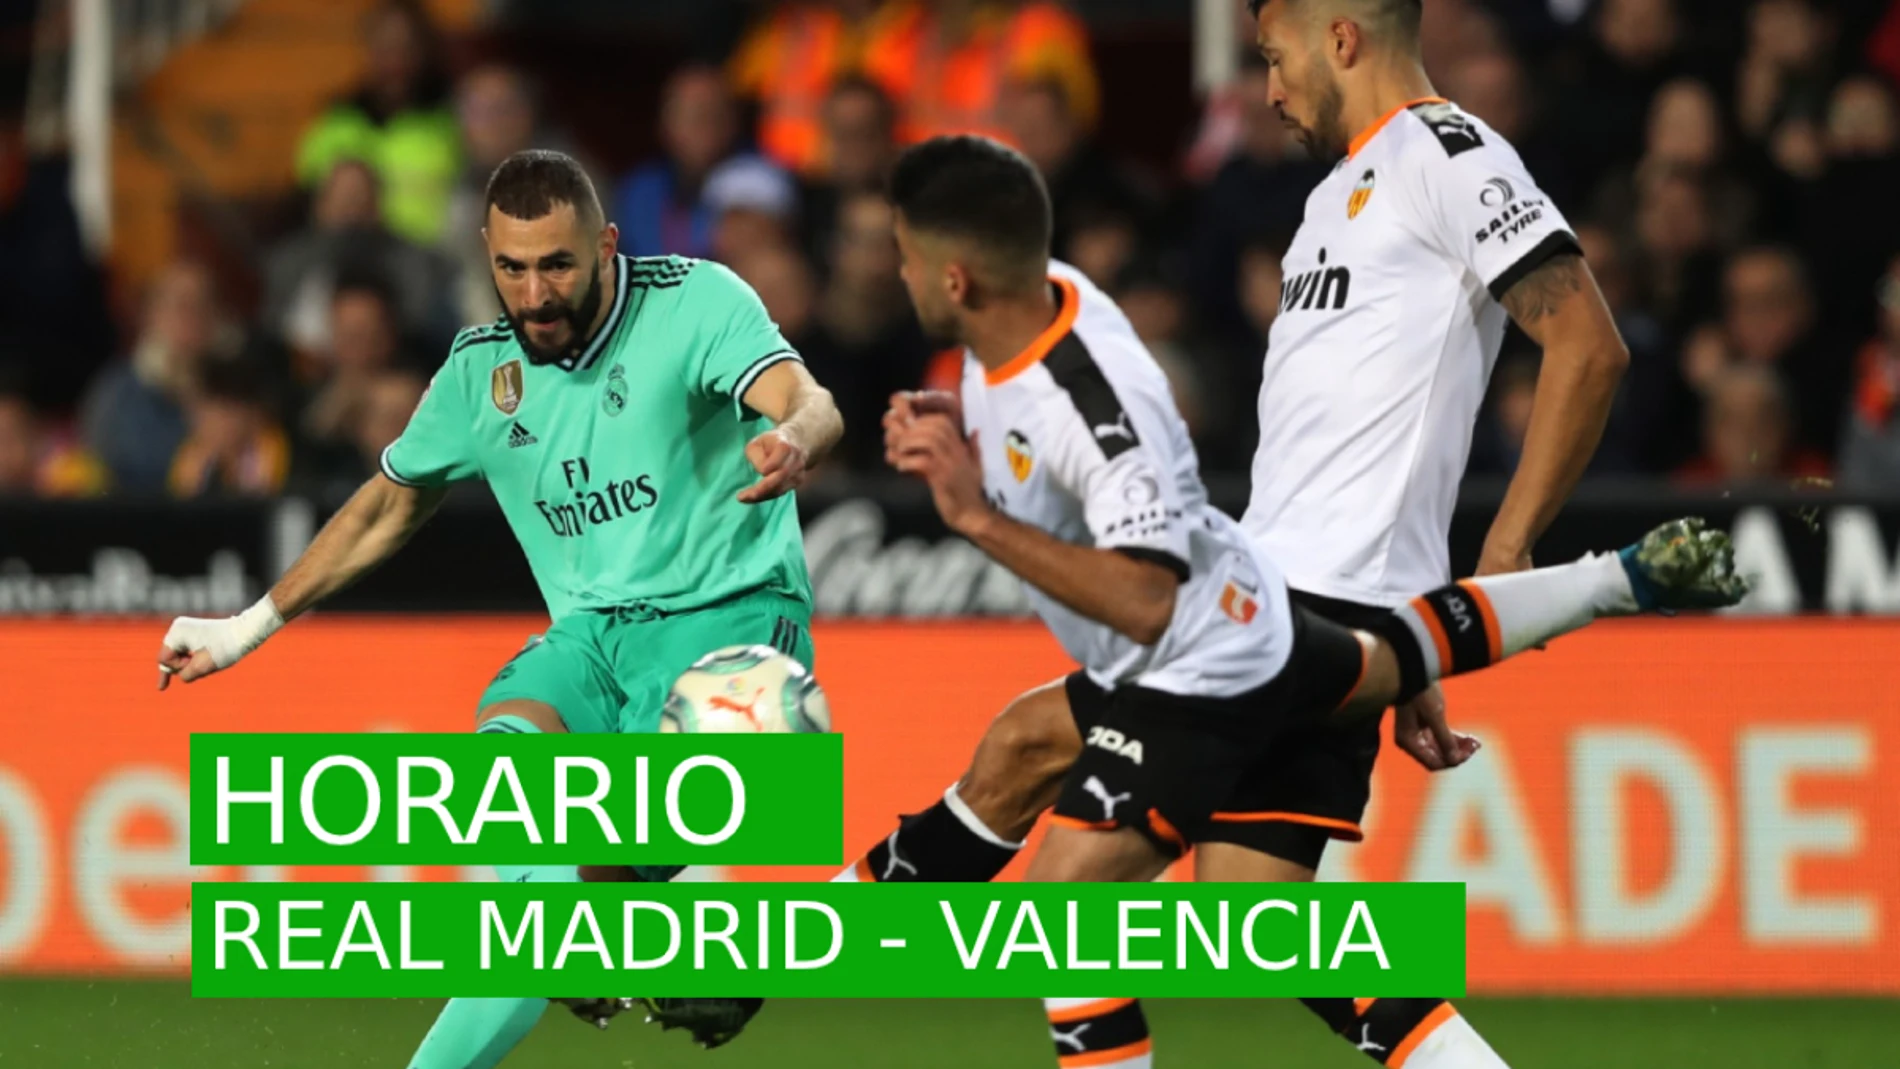 Convocar motivo Muscular Real Madrid - Valencia: Horario, posibles alineaciones, dónde ver el partido  y previa